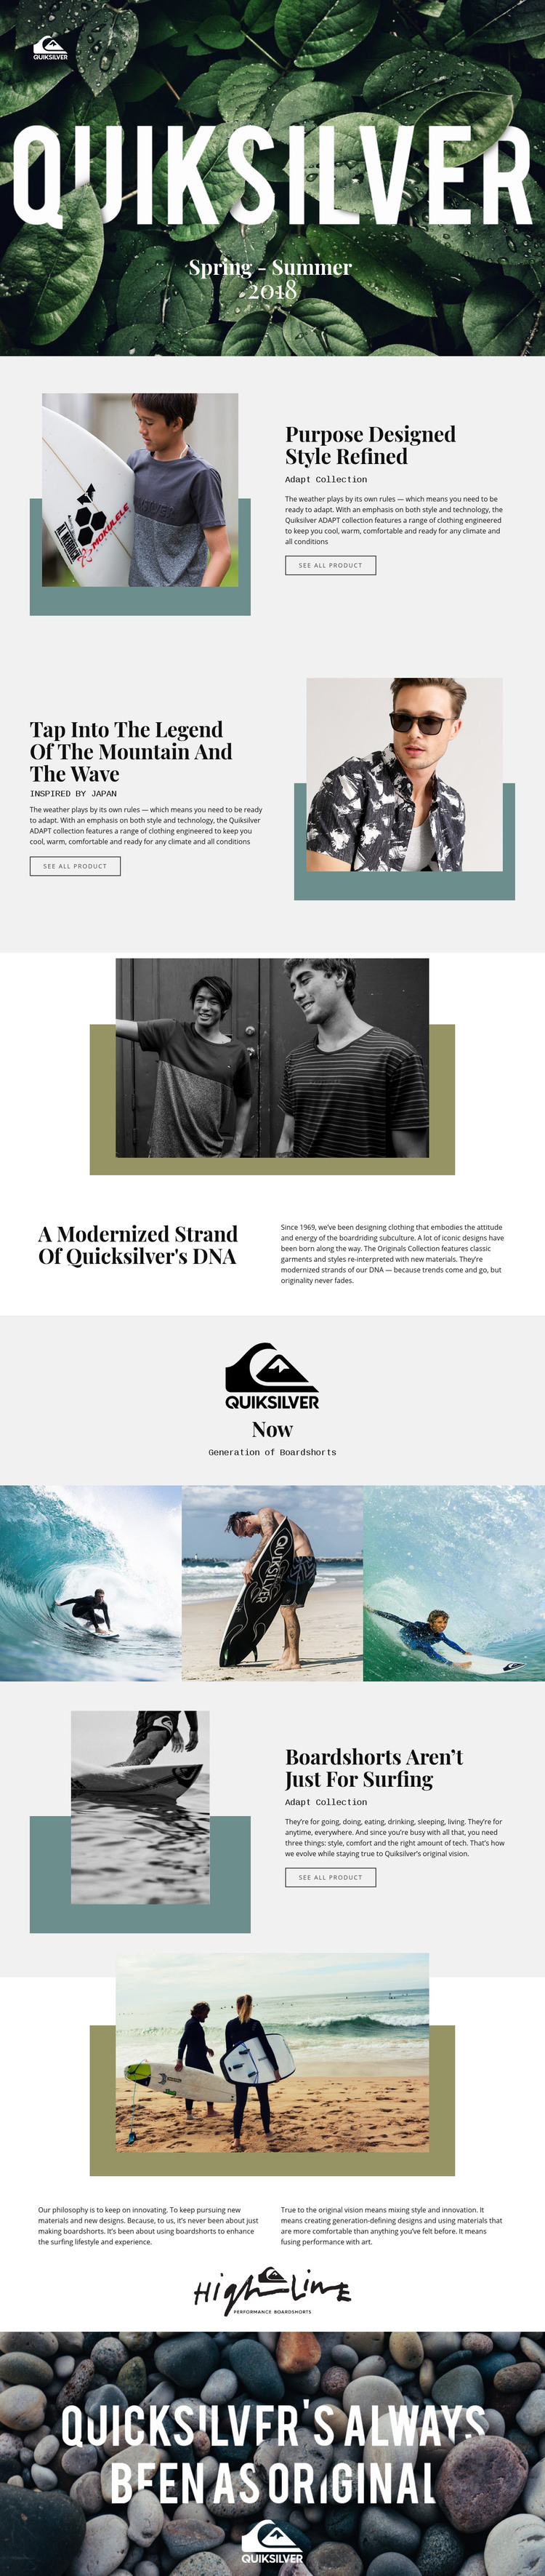 Quiksilver Homepage Design